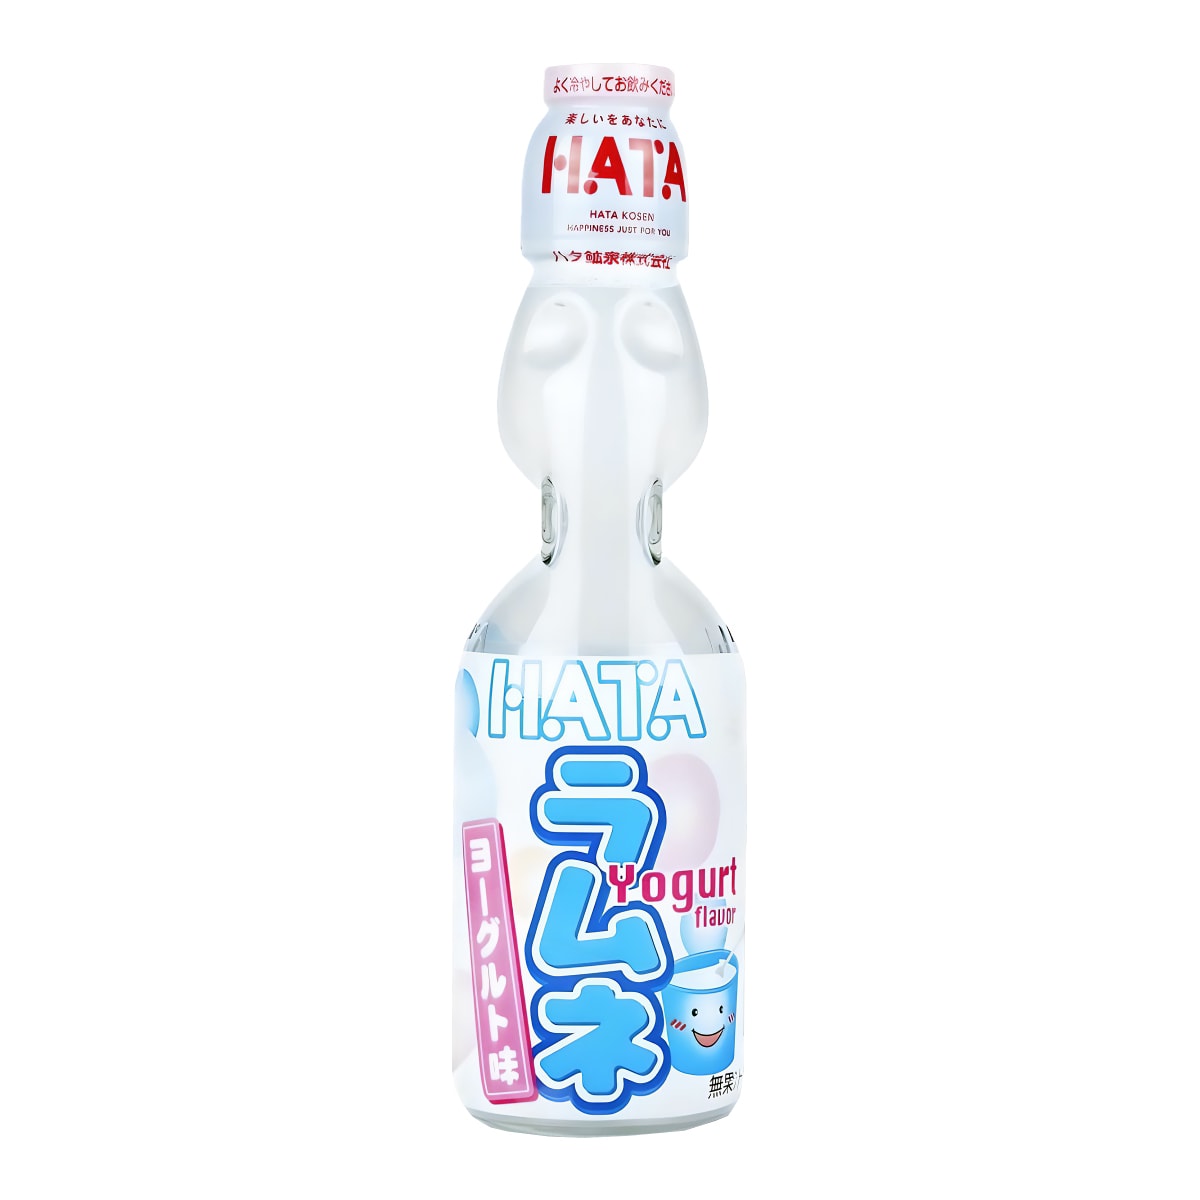 Купить напиток Hata Ramune газированный, со вкусом йогурта, 200 мл, цены на Мегамаркет | Артикул: 100067415407